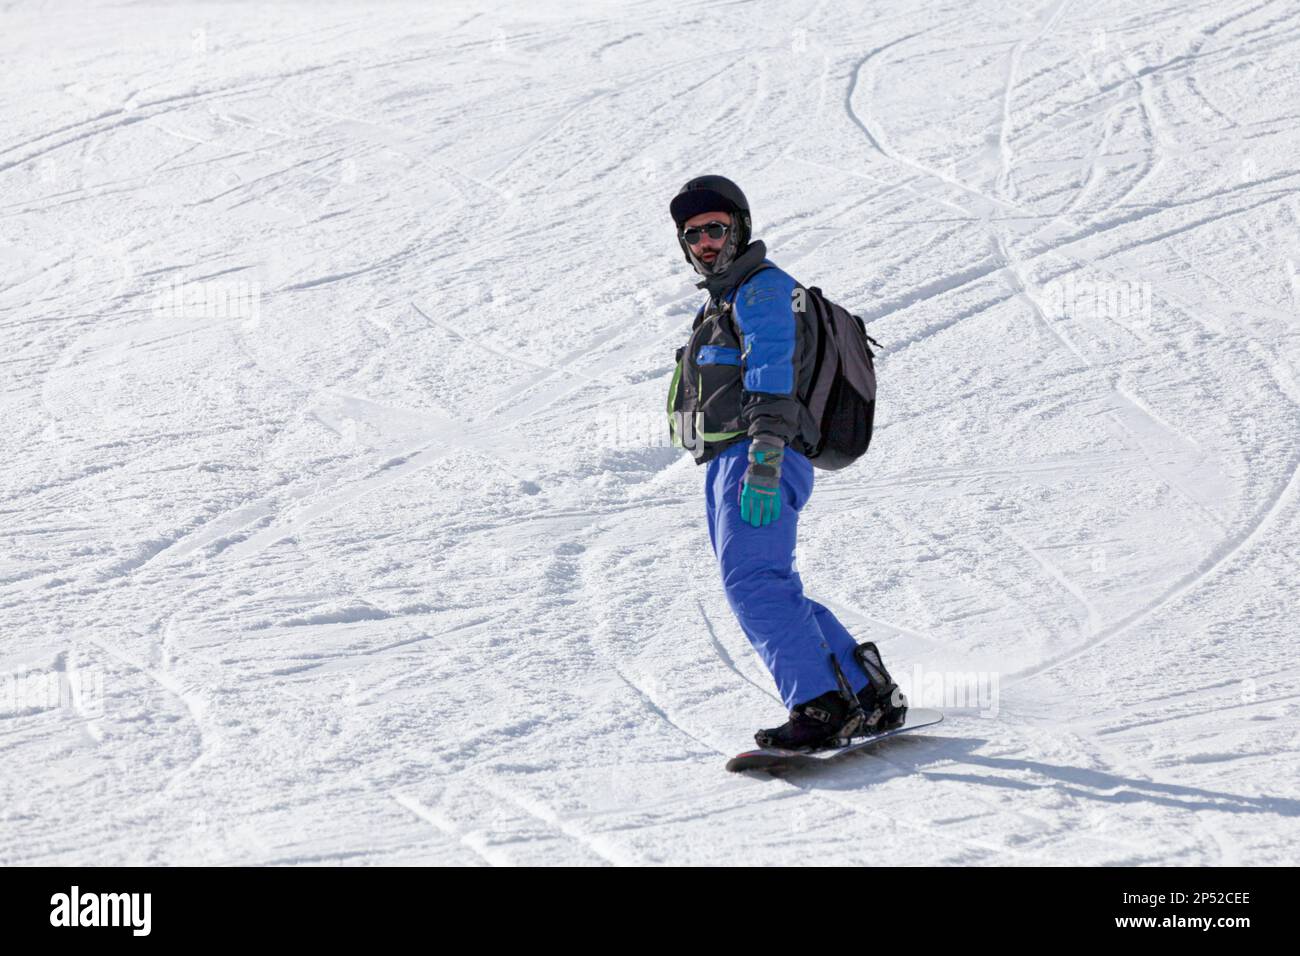 Pas de la Casa, Andorra, Dezember 02 2019: Ein Snowboarder auf dem Abhang von Grandvalira, dem größten Skigebiet in den Pyrenäen und Südeuropa. Stockfoto